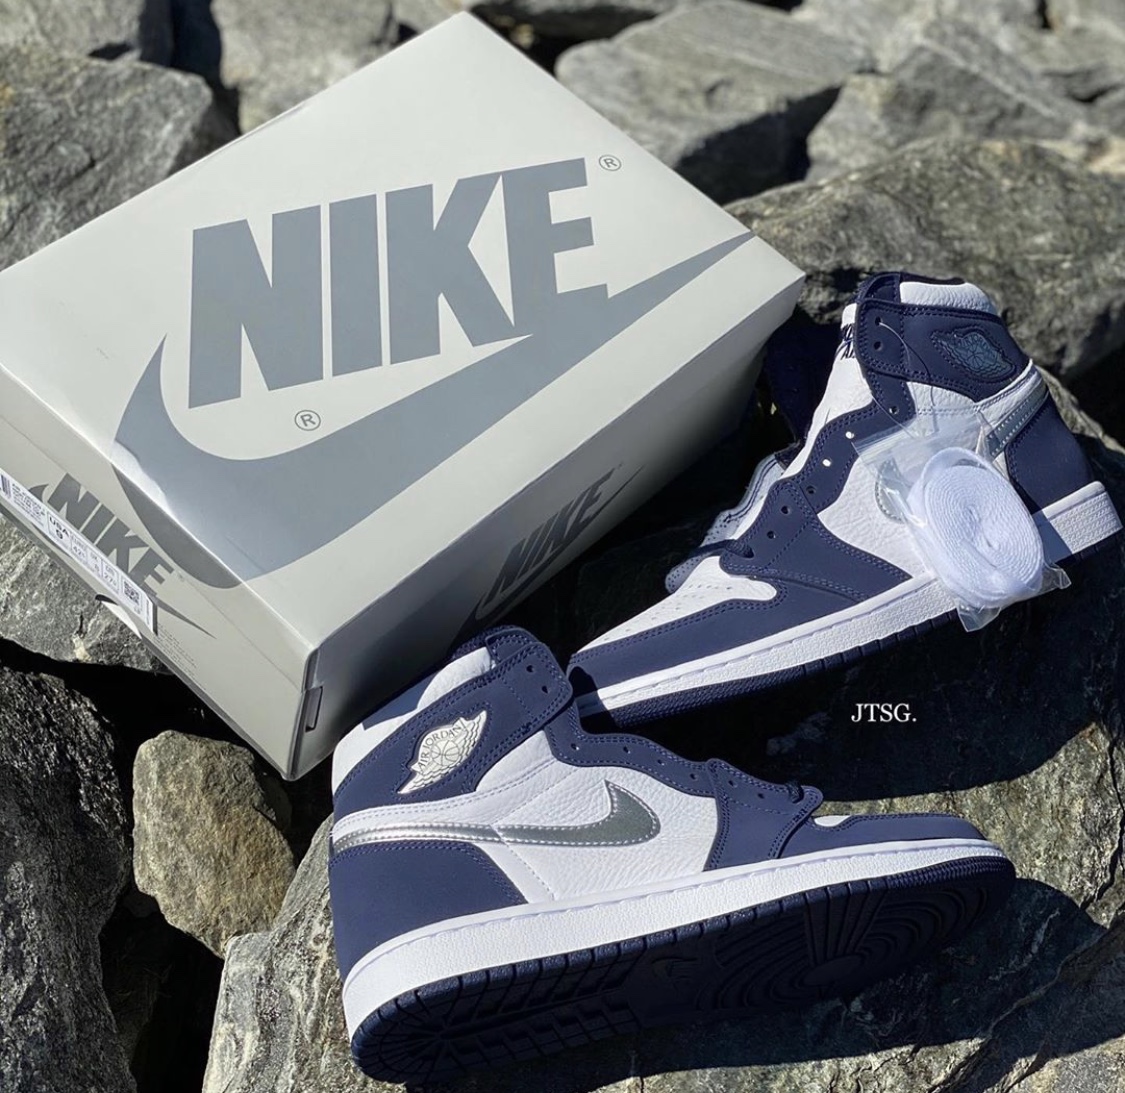 Nike】Air Jordan 1 Retro High OG CO.JP “Midnight Navy”が国内2020年